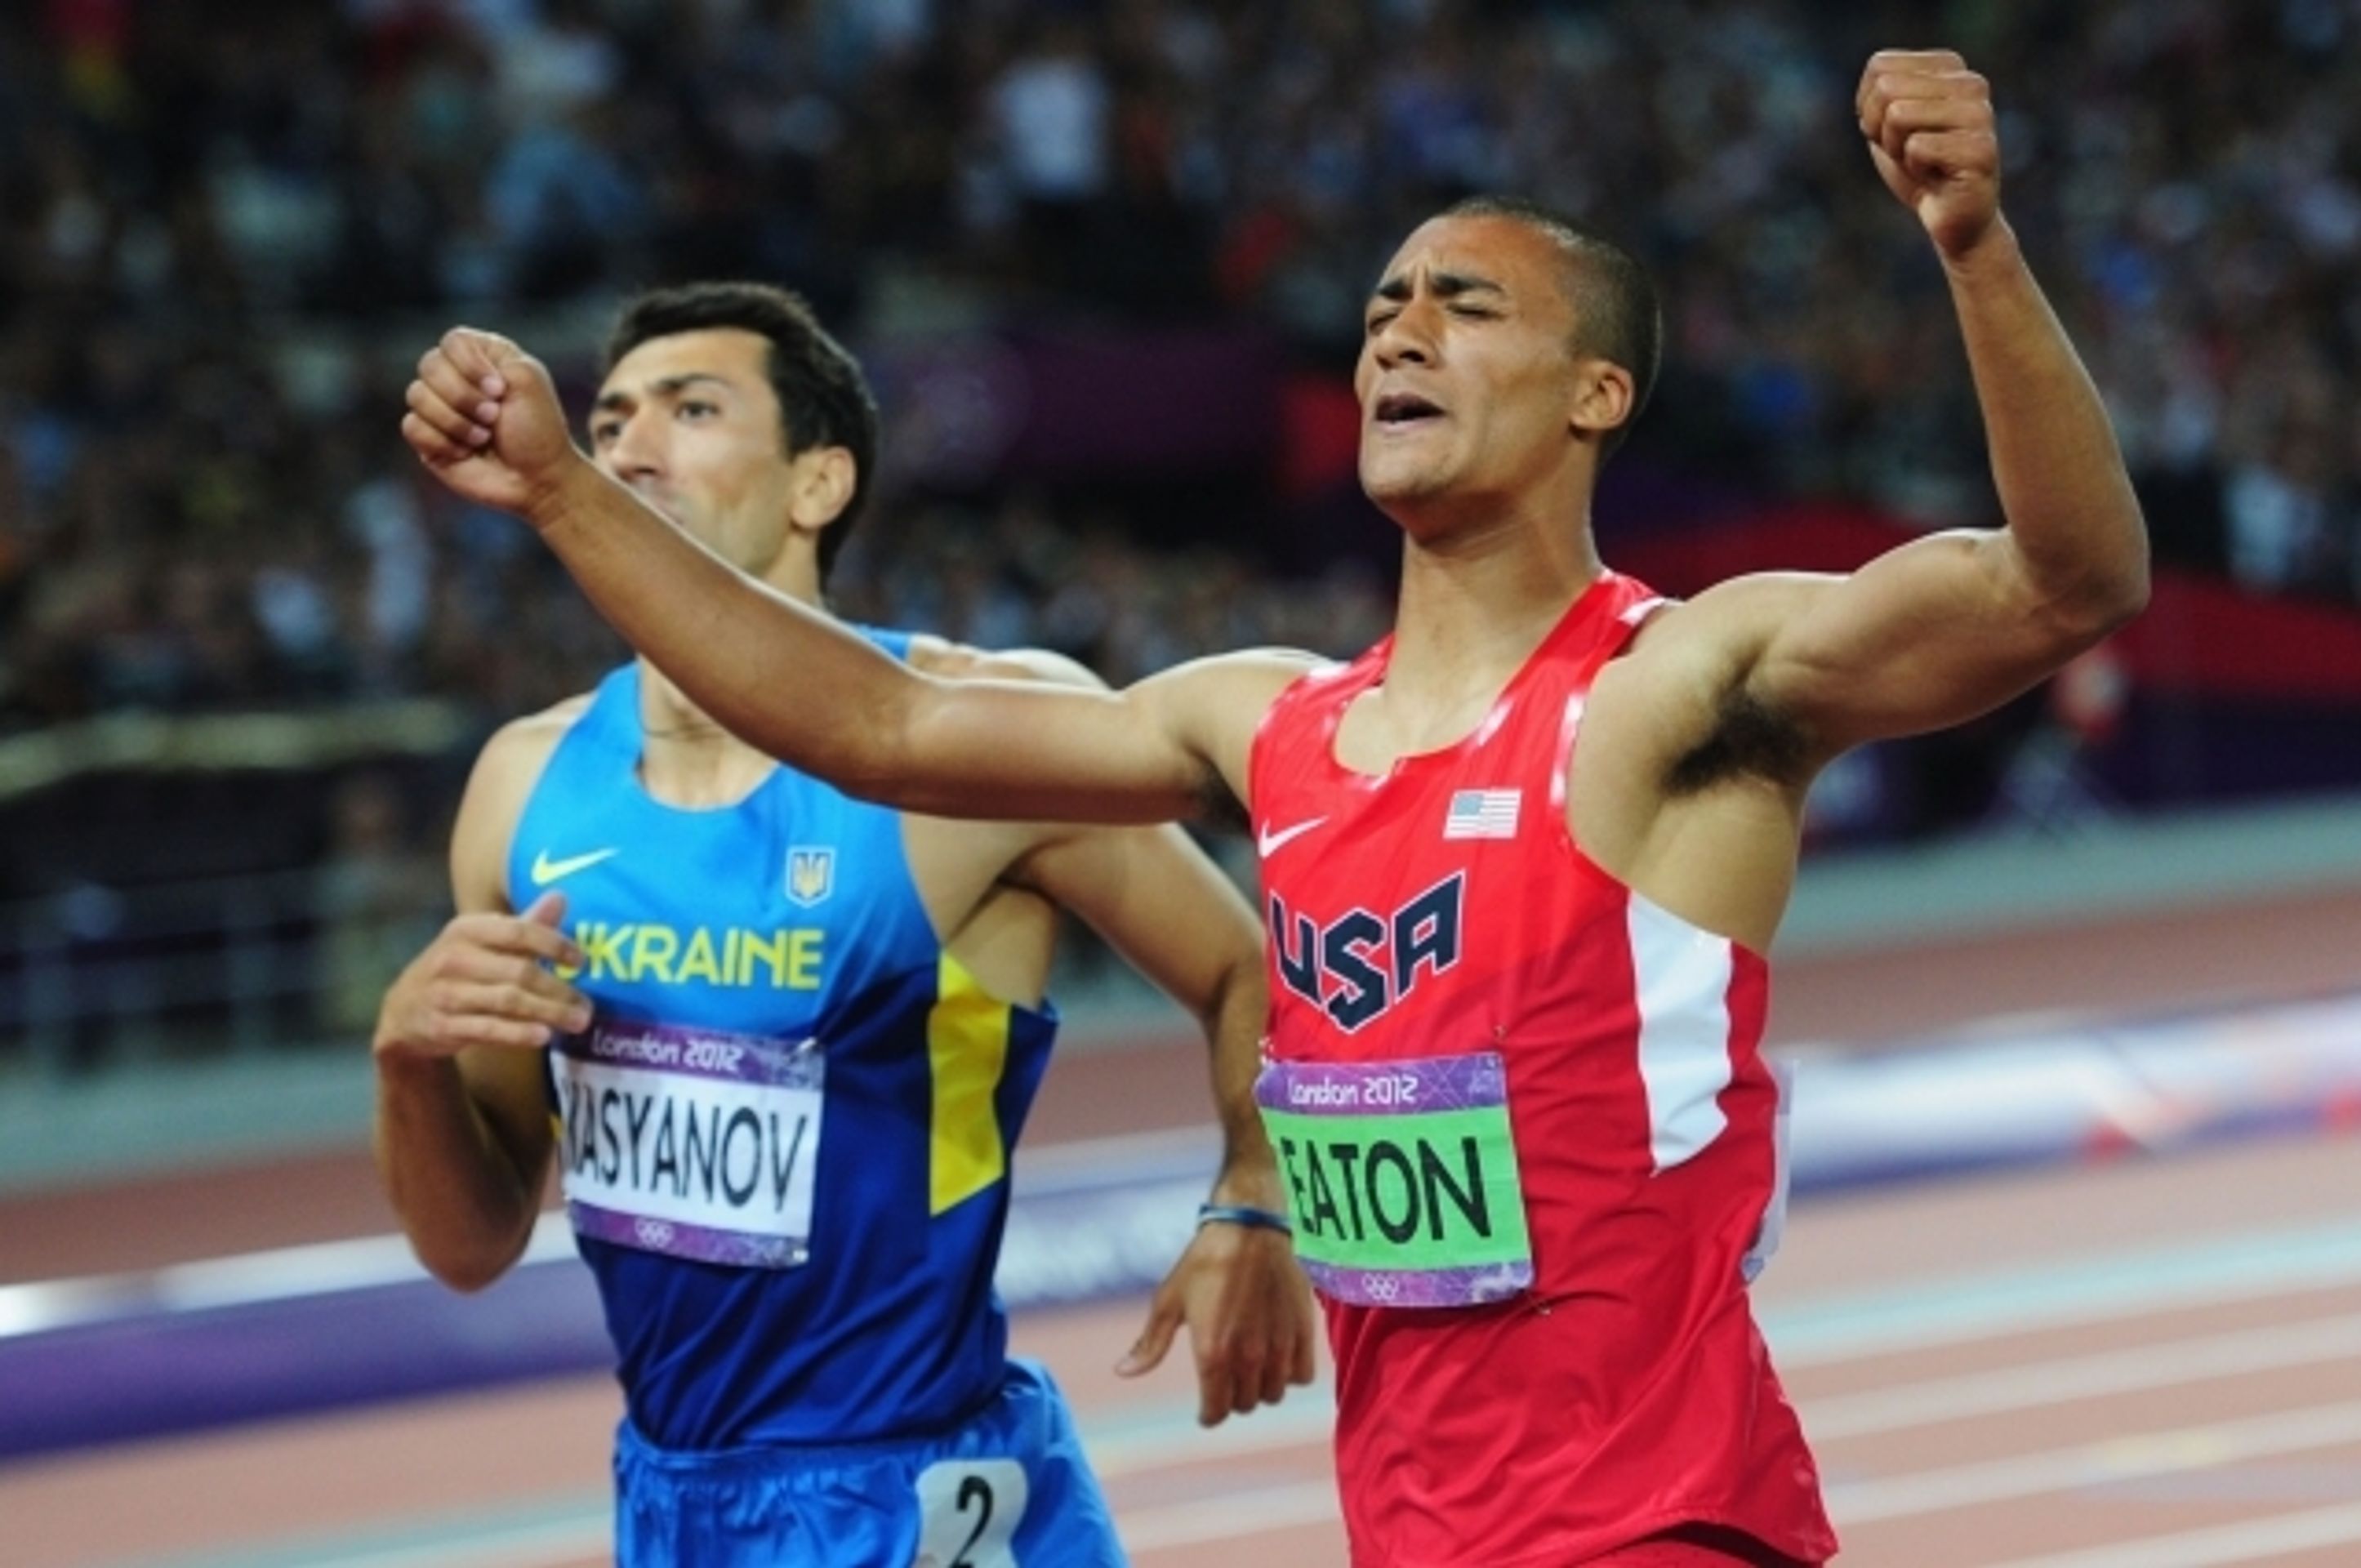 GALERIE: Kdo je nejlepší? Bolt versus Eaton - GALERIE: Kdo je lepší? Bolt versus Eaton (7/8)